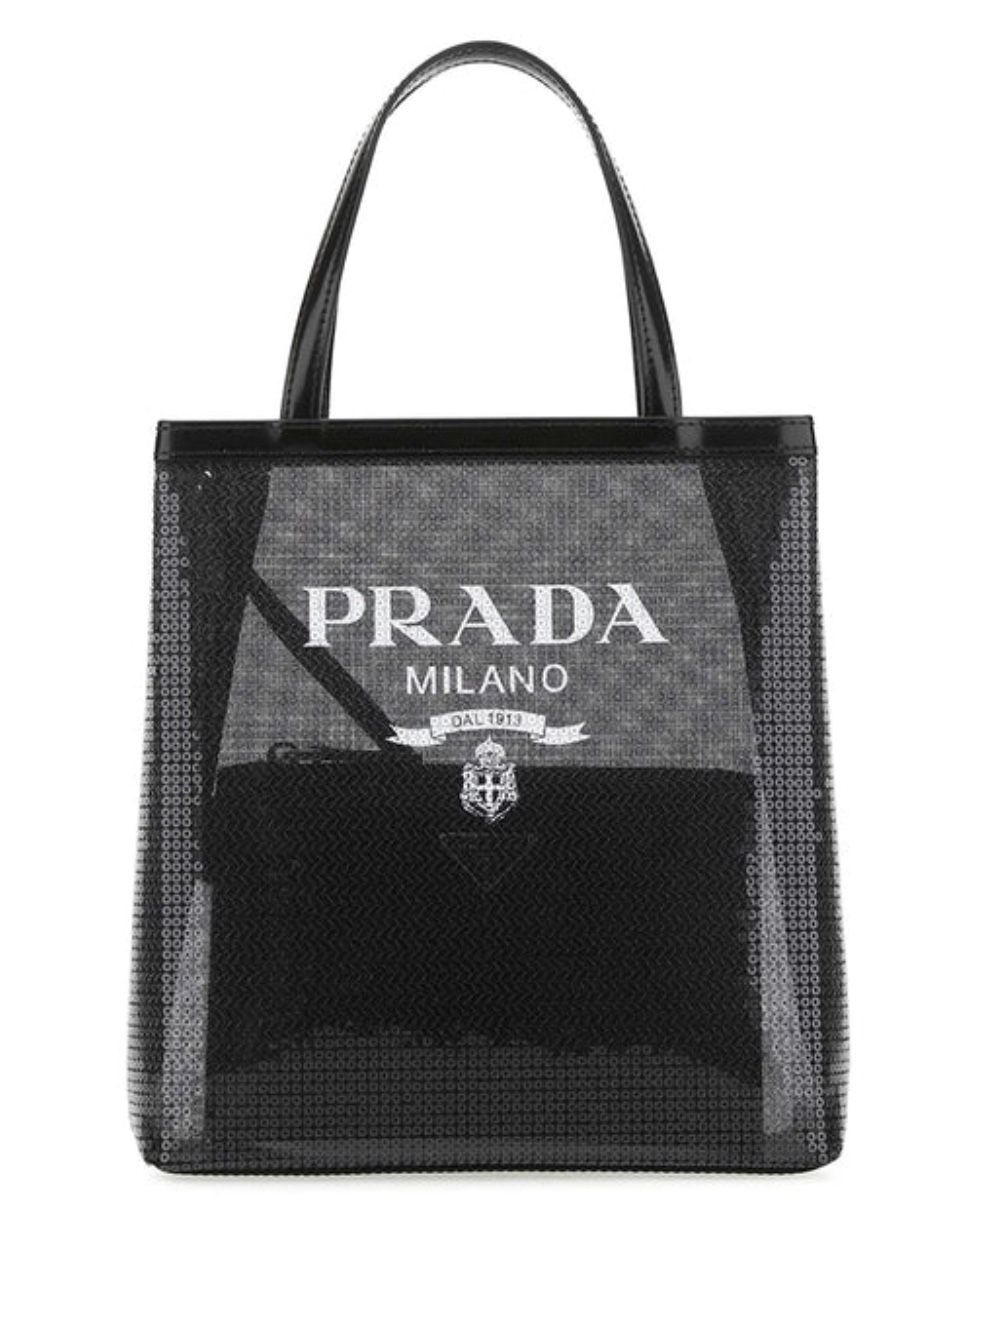 Prada Sequin Tote Bag (Wmns, Black)